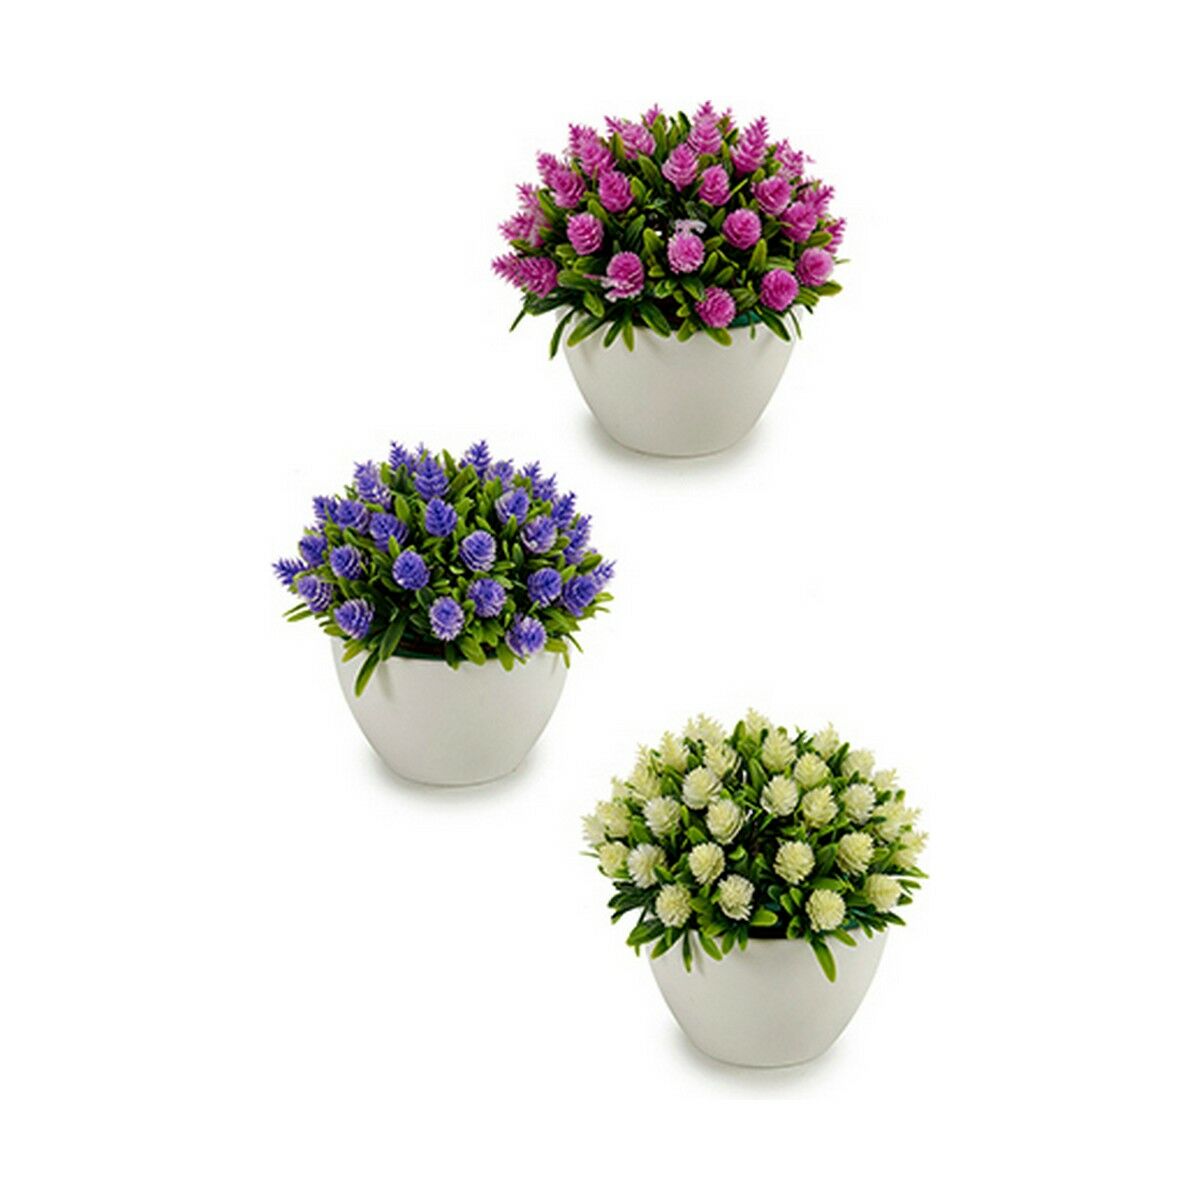 Decorative Plant Flowers Plastic 14 x 12,5 x 14 cm (12 Units)